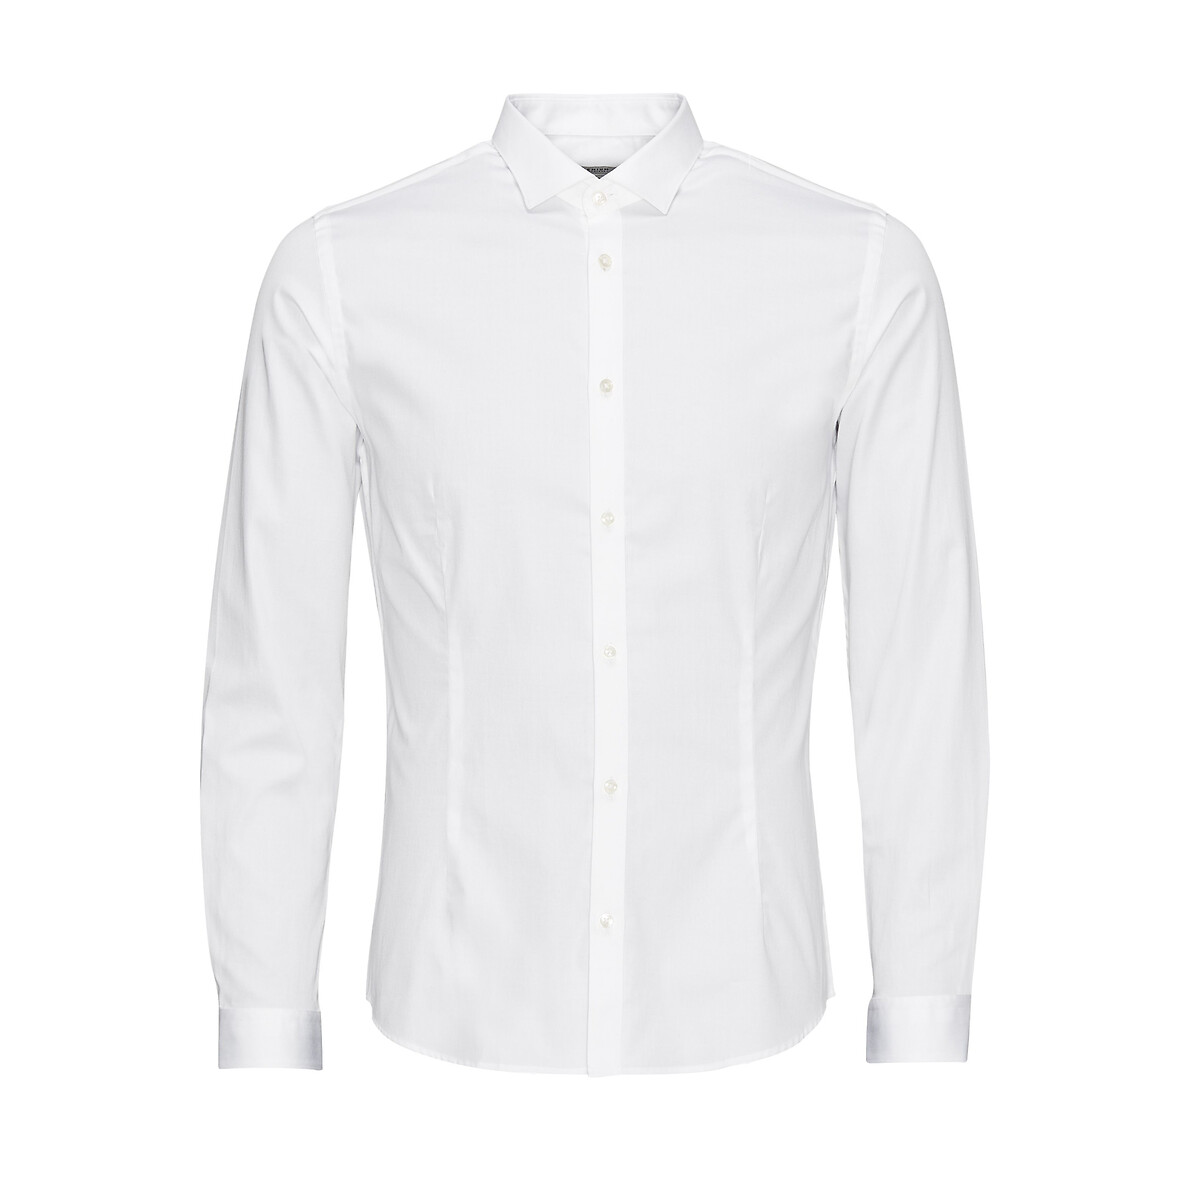 Рубашка Суперслим Jjprparma S белый LaRedoute, размер S